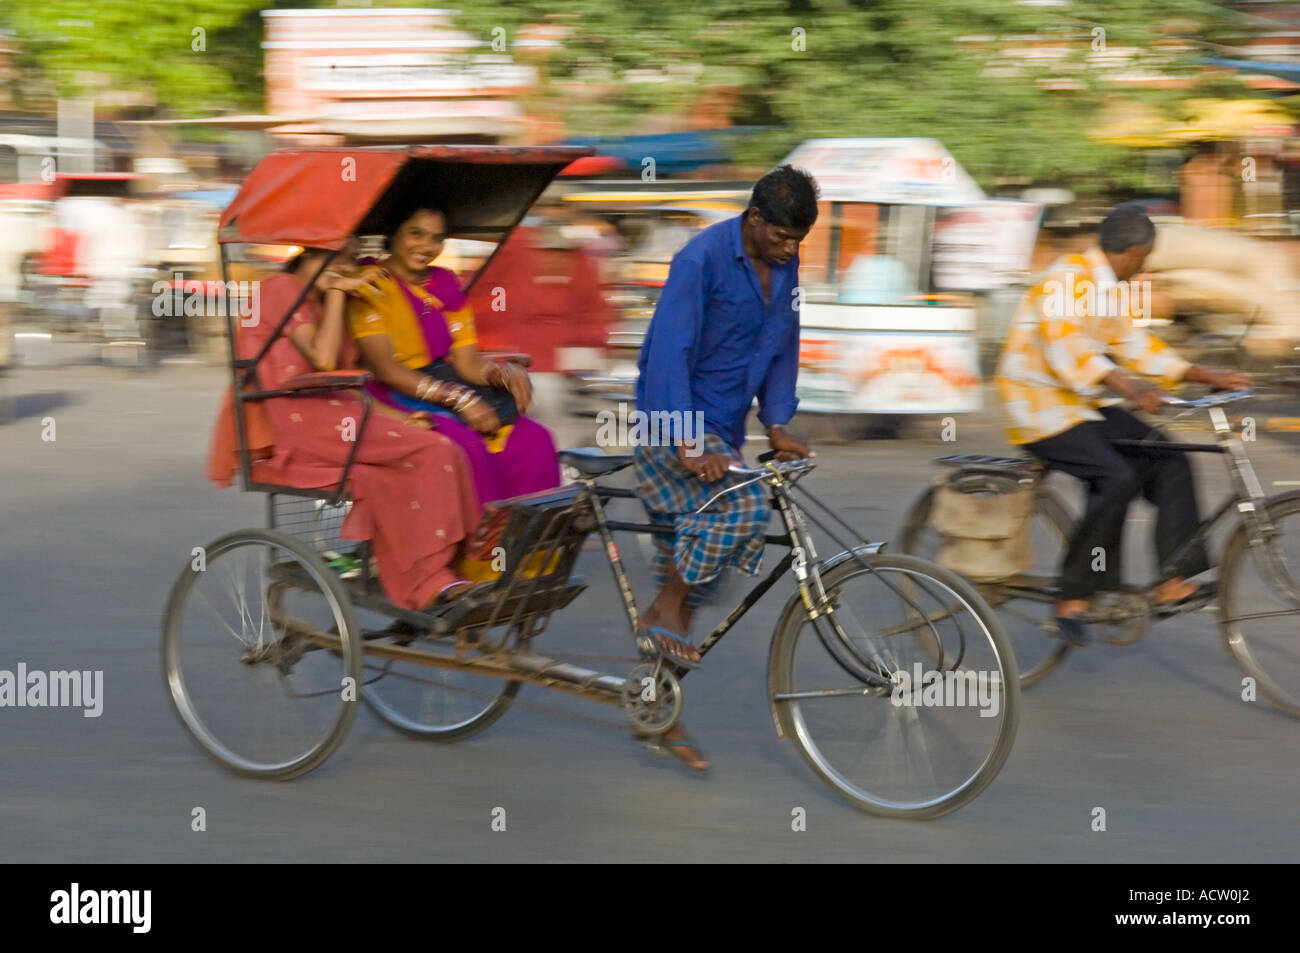 Deux femmes indiennes smiling attractive dans un cycle rickshaw dans une scène de rue à Jaipur avec le panoramique de flou. Banque D'Images